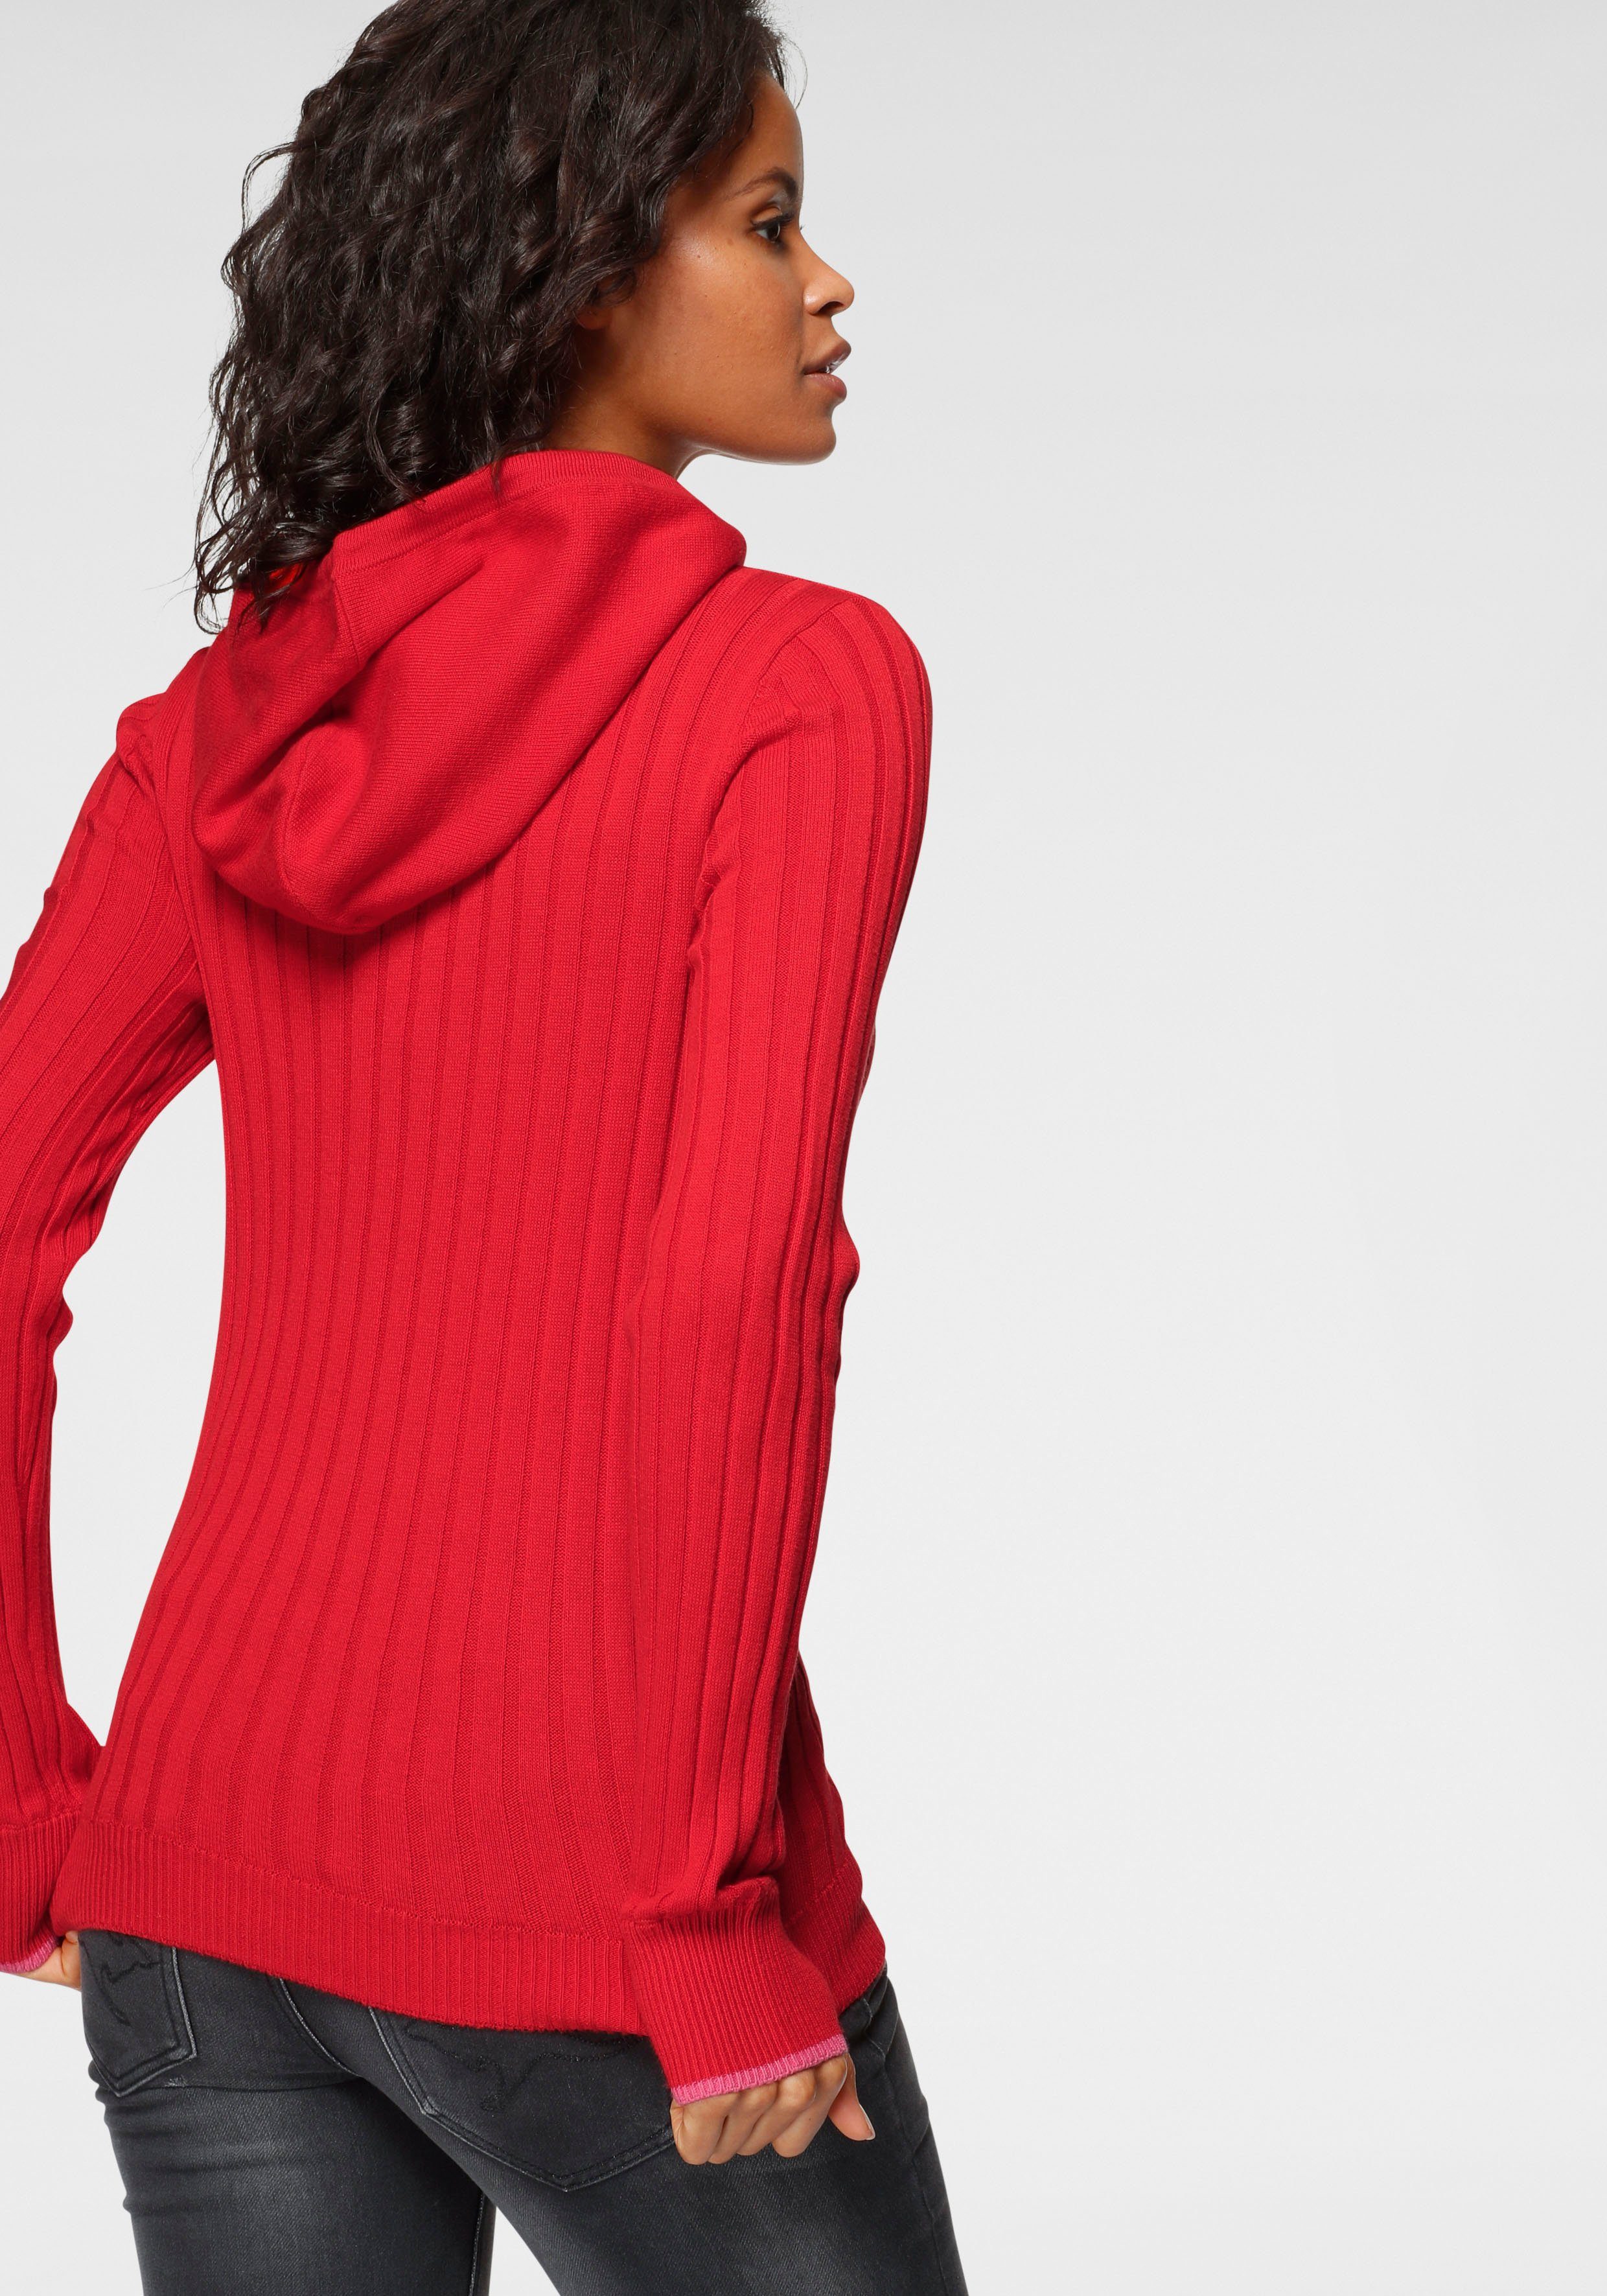 Damen Pullover KangaROOS Strickpullover mit kontrastfarbener Kapuzeninnenseite und Logodruck auf dem Arm